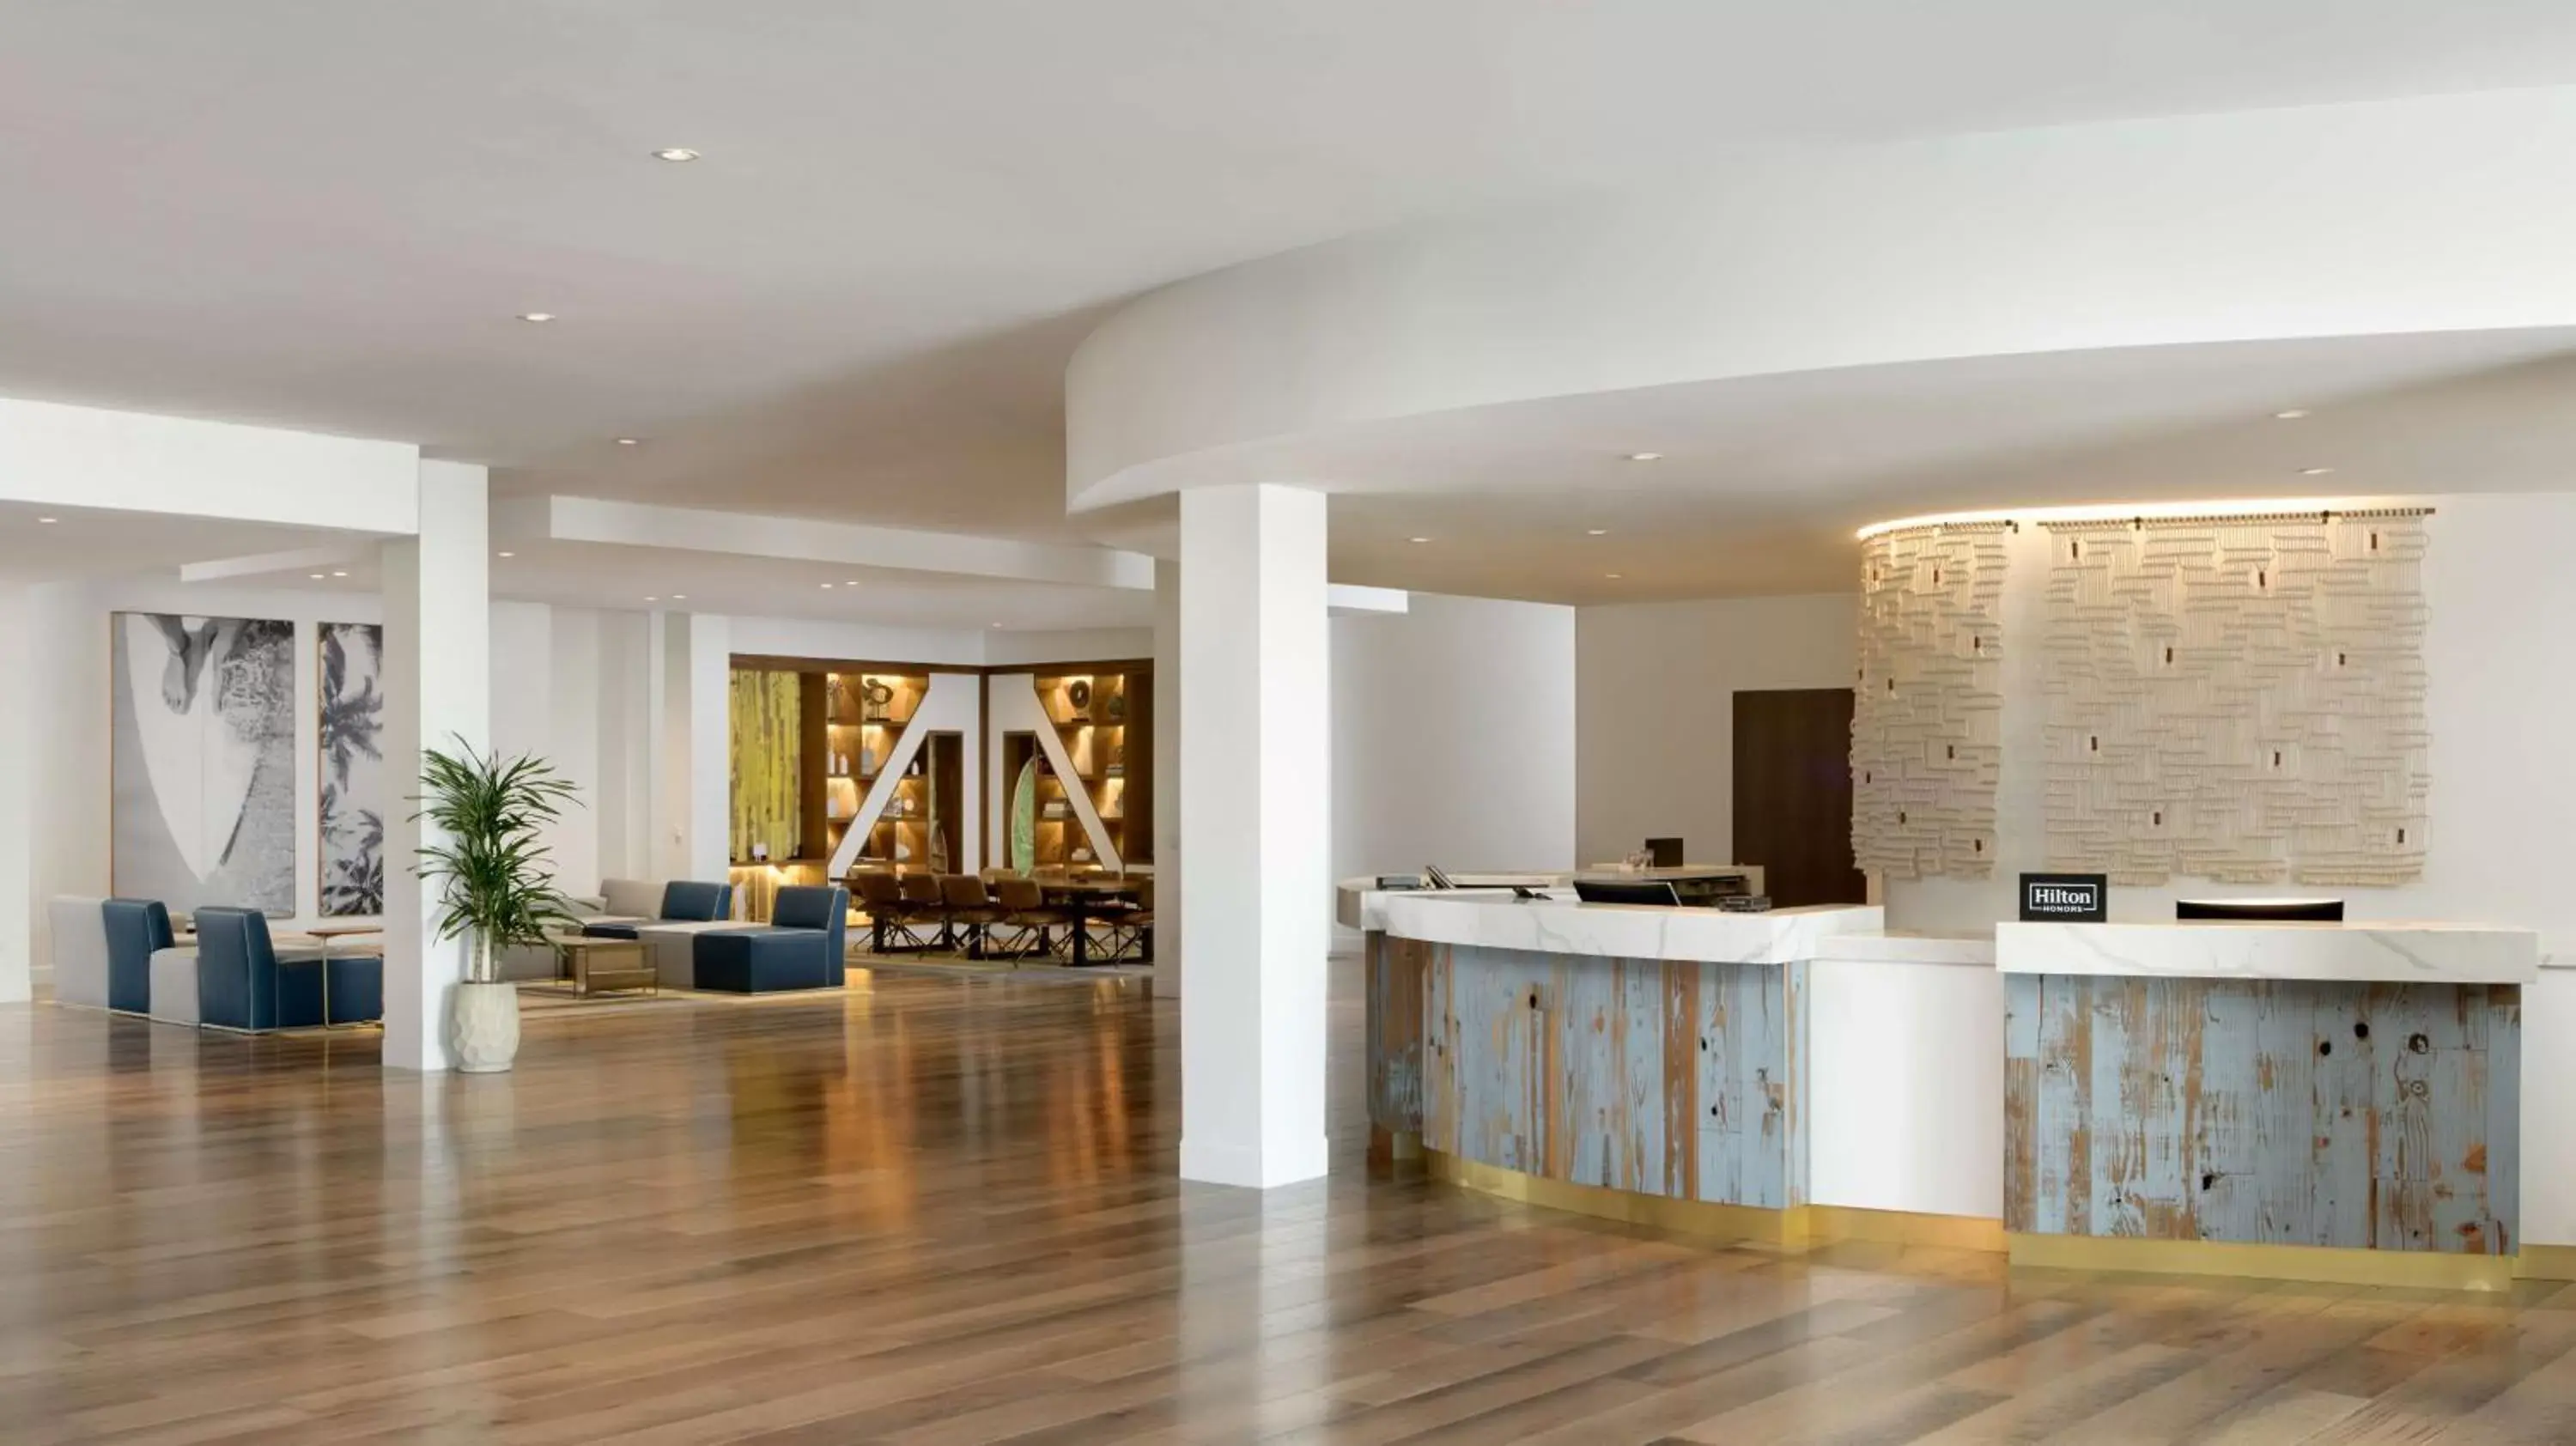 Lobby or reception, Lobby/Reception in Hilton Los Angeles-Culver City, CA